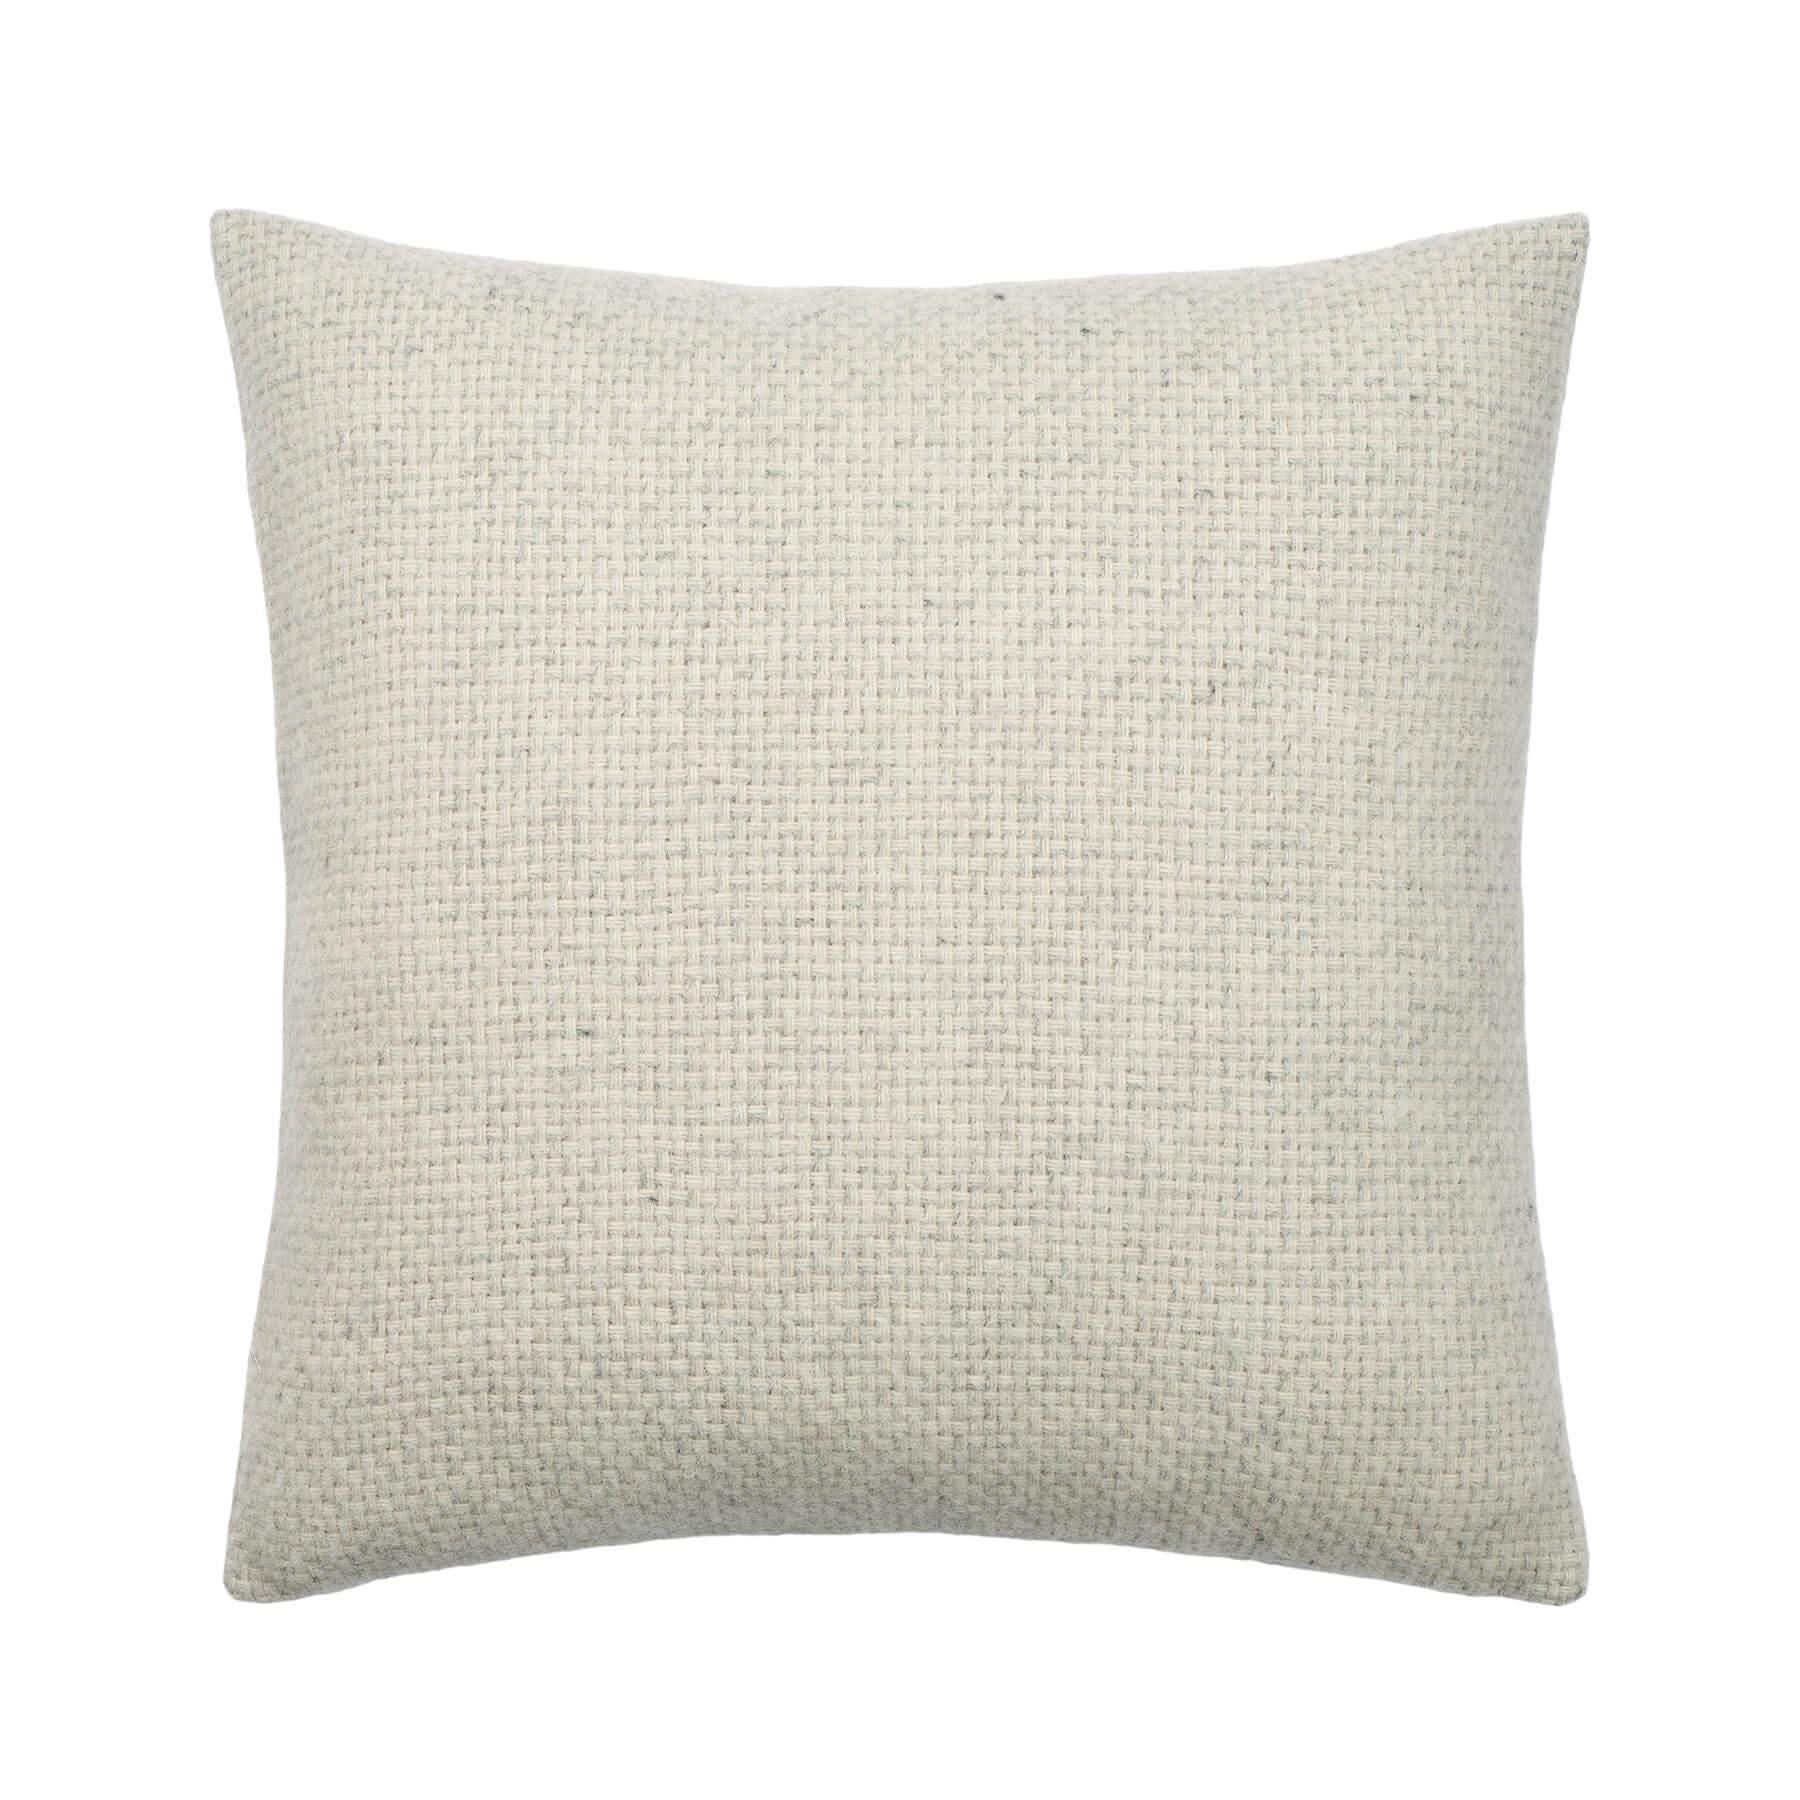 Bolia Freda Cushion 50 X 50cm Light Grey Wool